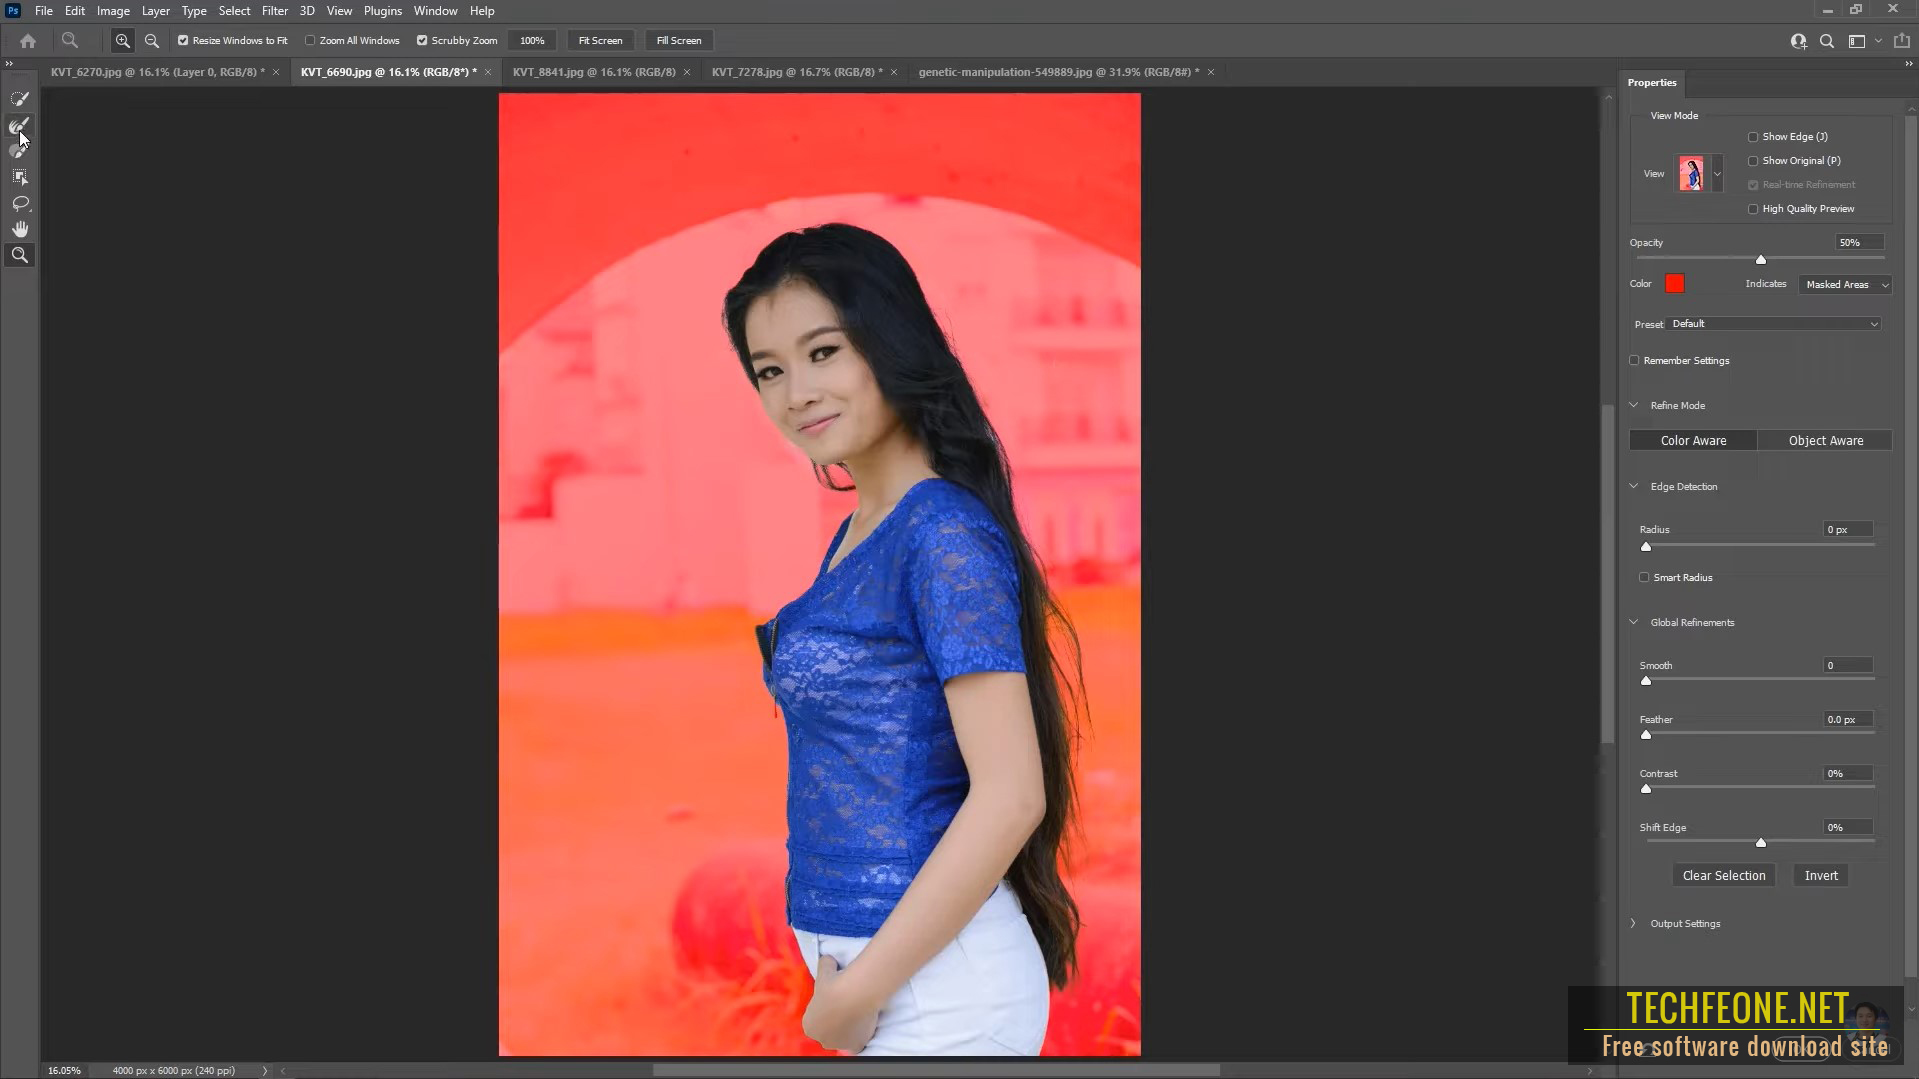 Adobe Photoshop 2021 v22.5.8 (x64) Pre-activated - TECHFEONE